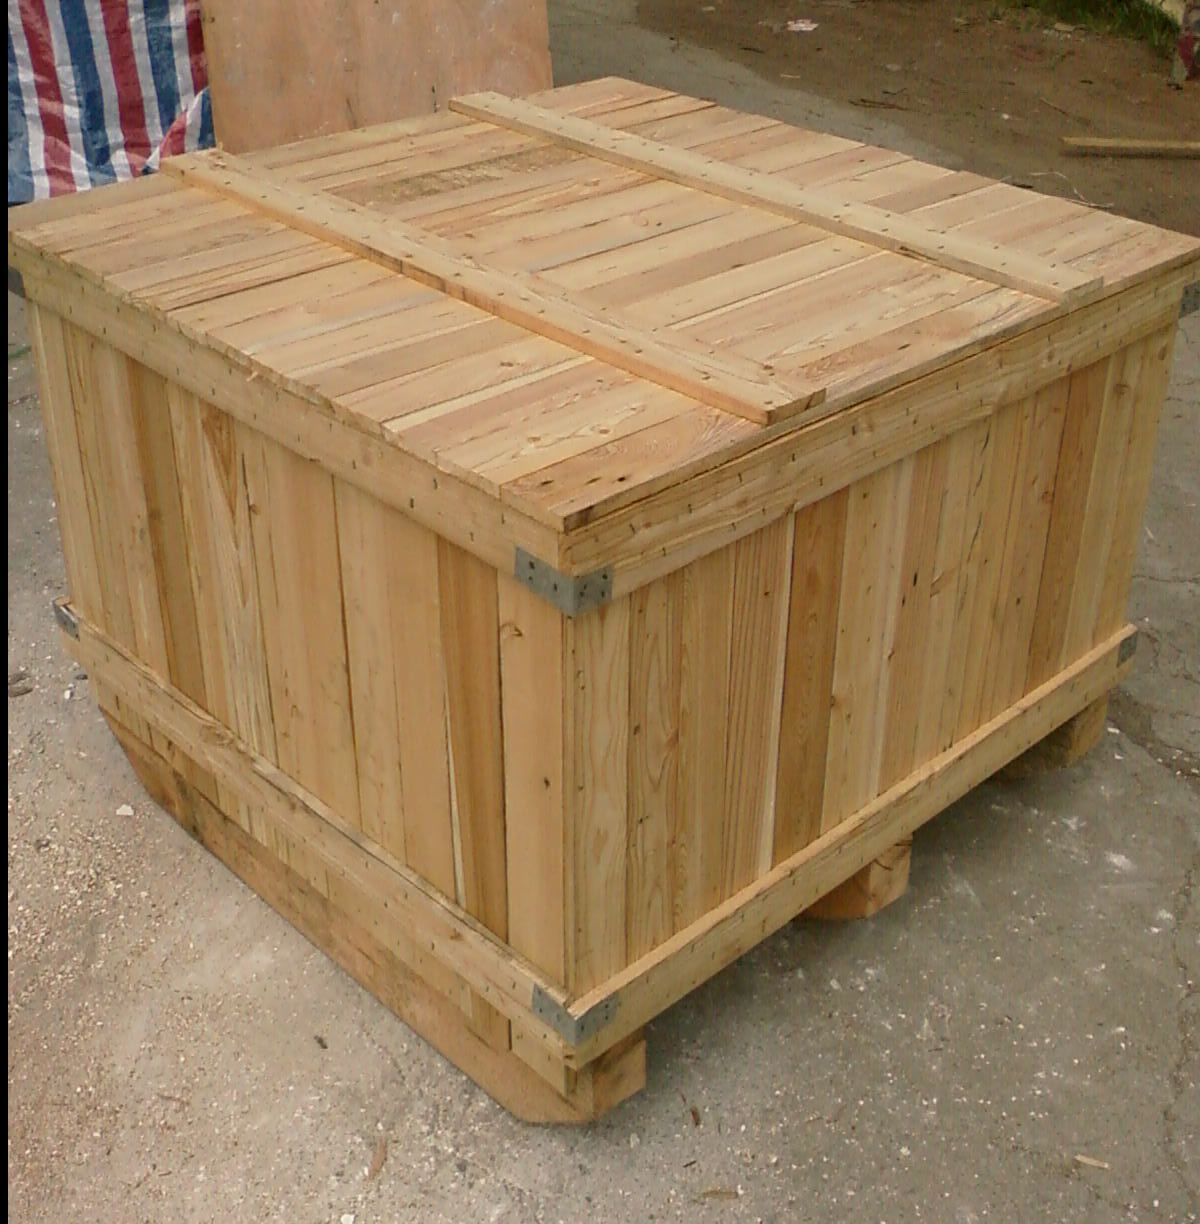 木包装箱的结构设计是依据科学原理对包装的形状构造及内部附件进行的设计